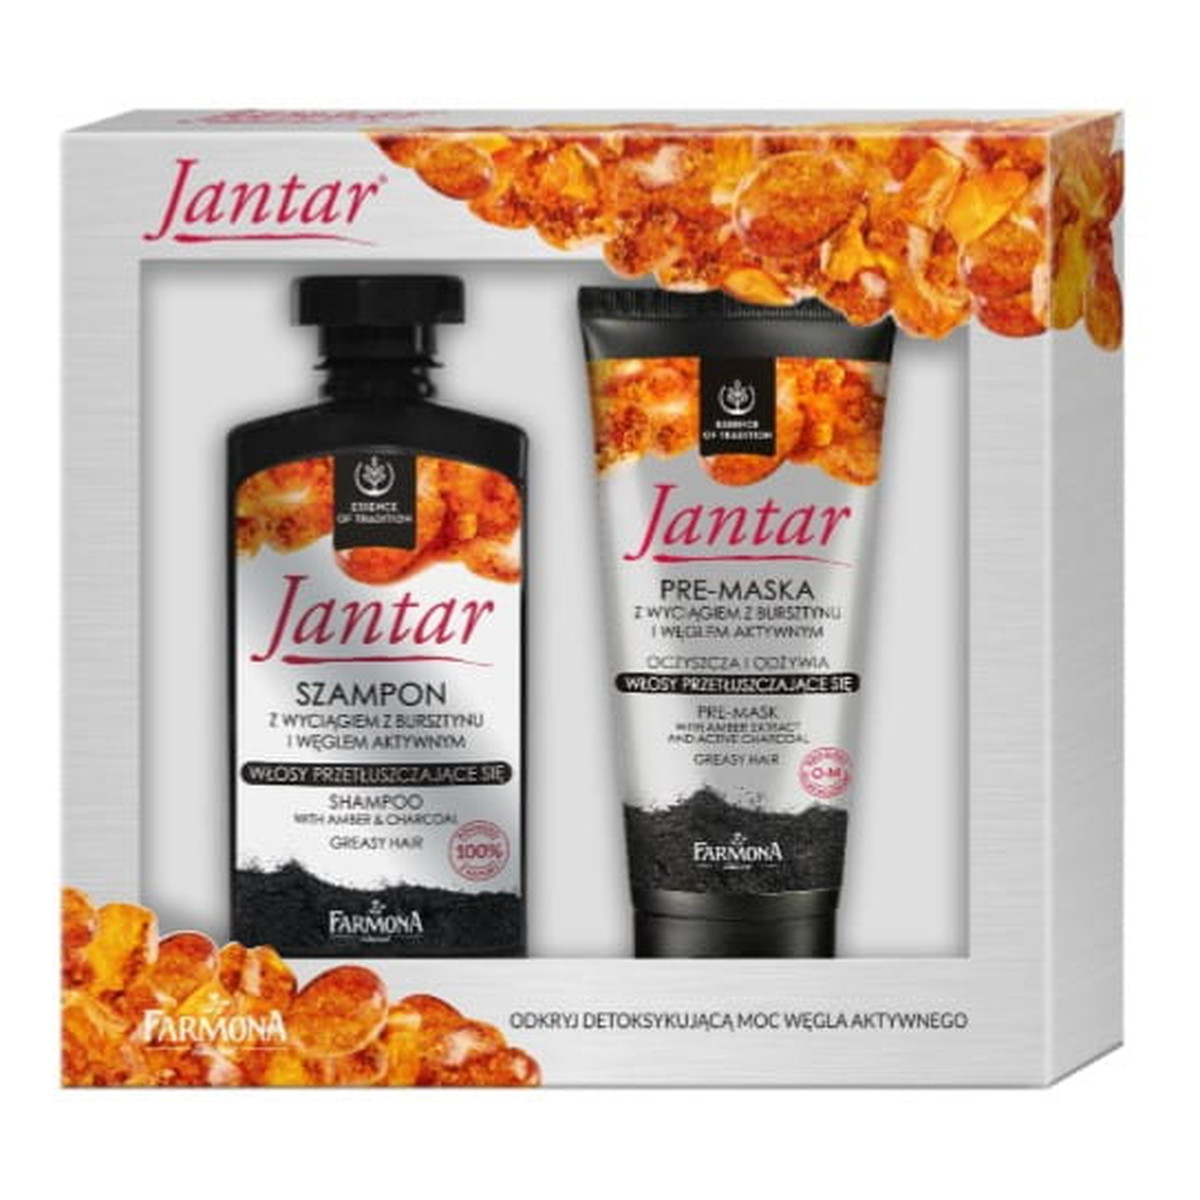 Farmona Jantar Zestaw prezentowy (szampon do włosów 330ml + Pre-maska do włosów 200g)